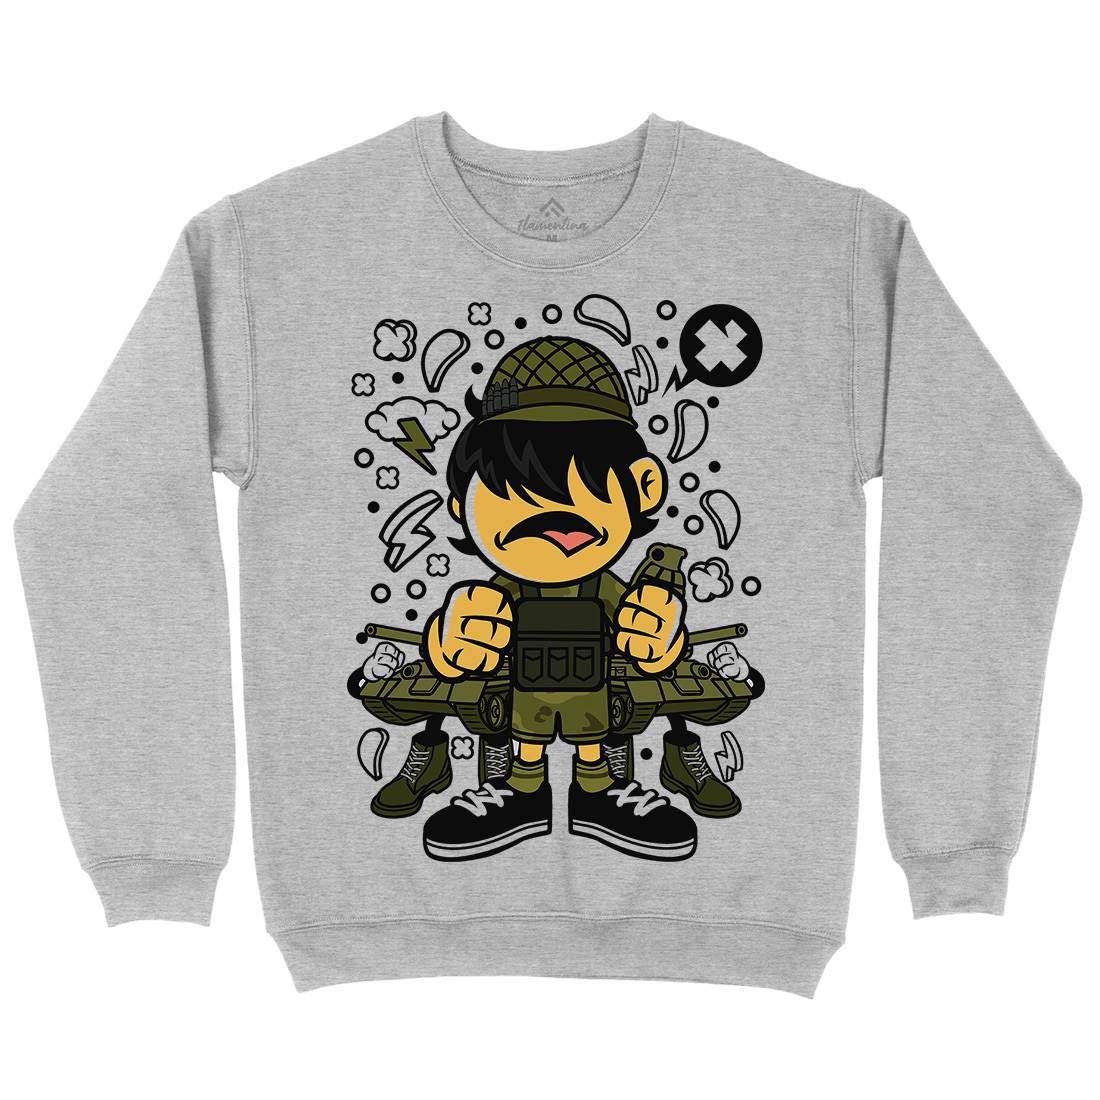 Soldier Kid Kids Crew Neck Sweatshirt Army C253